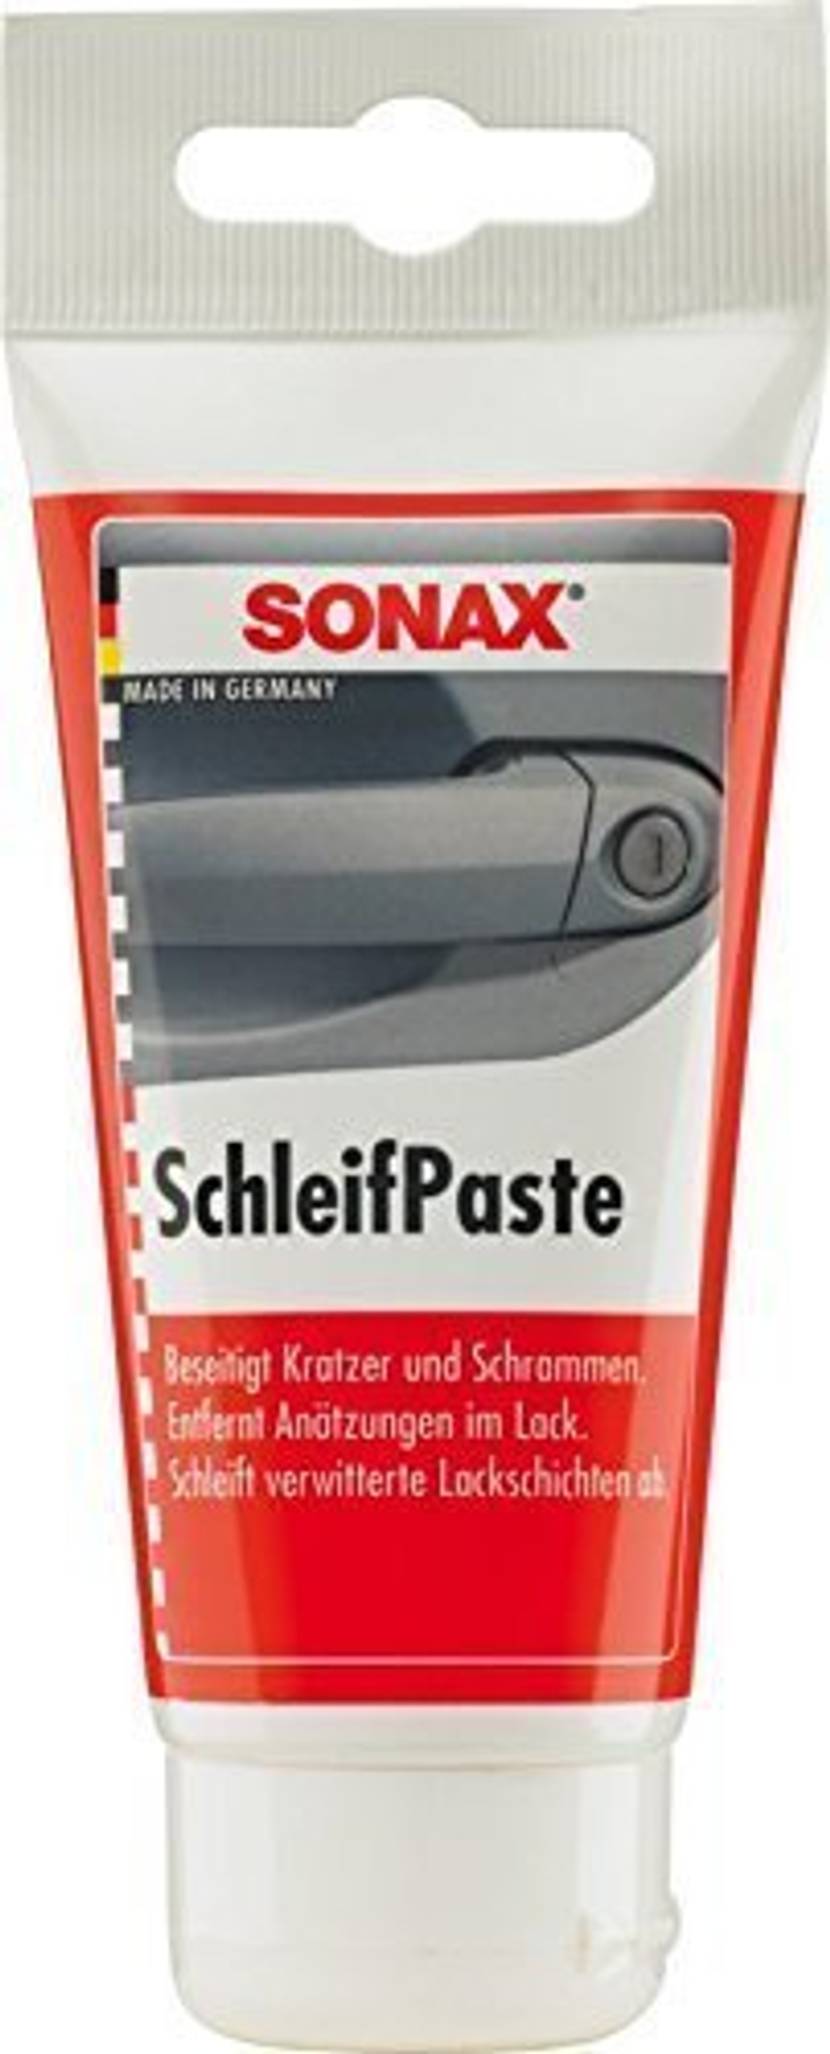 Sonax Schleifpaste